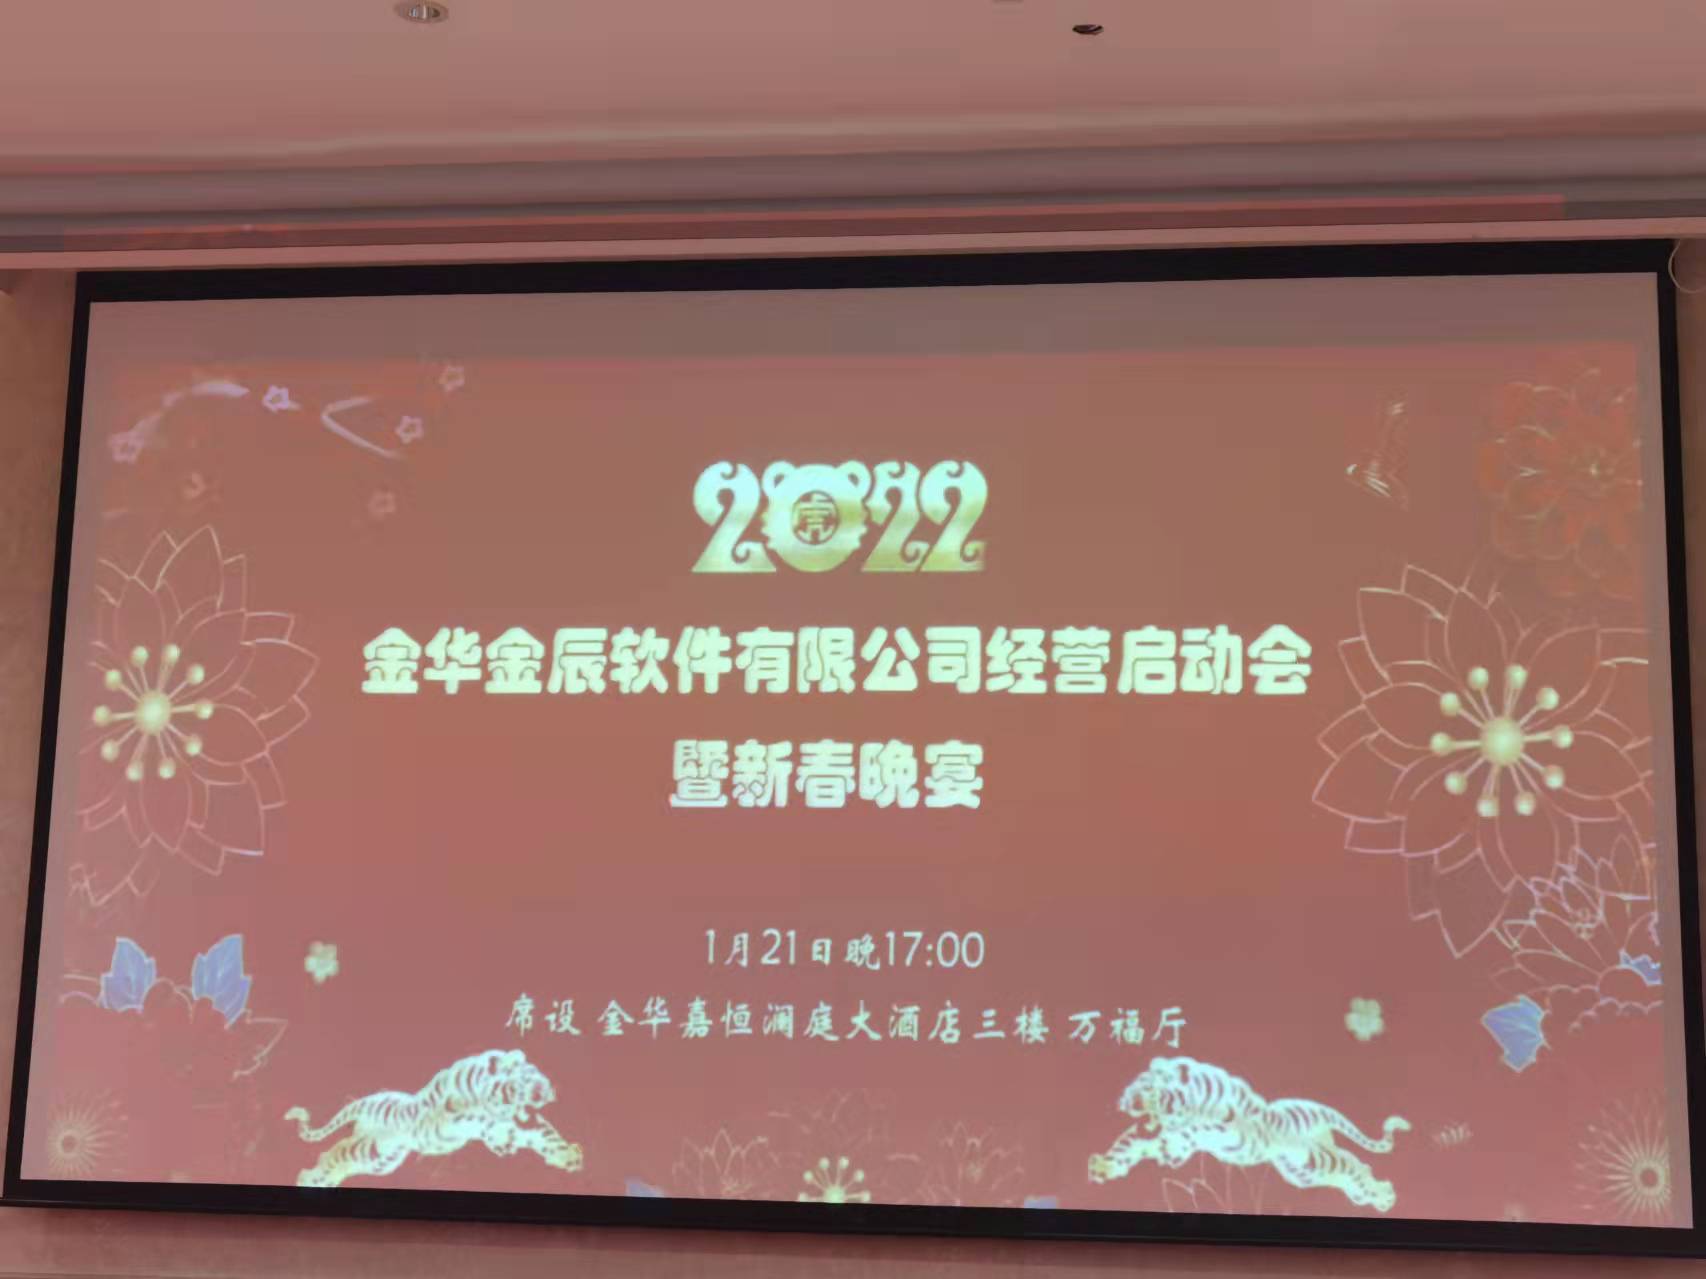 金辰软件2022年经营启动会暨迎新晚宴圆满举行